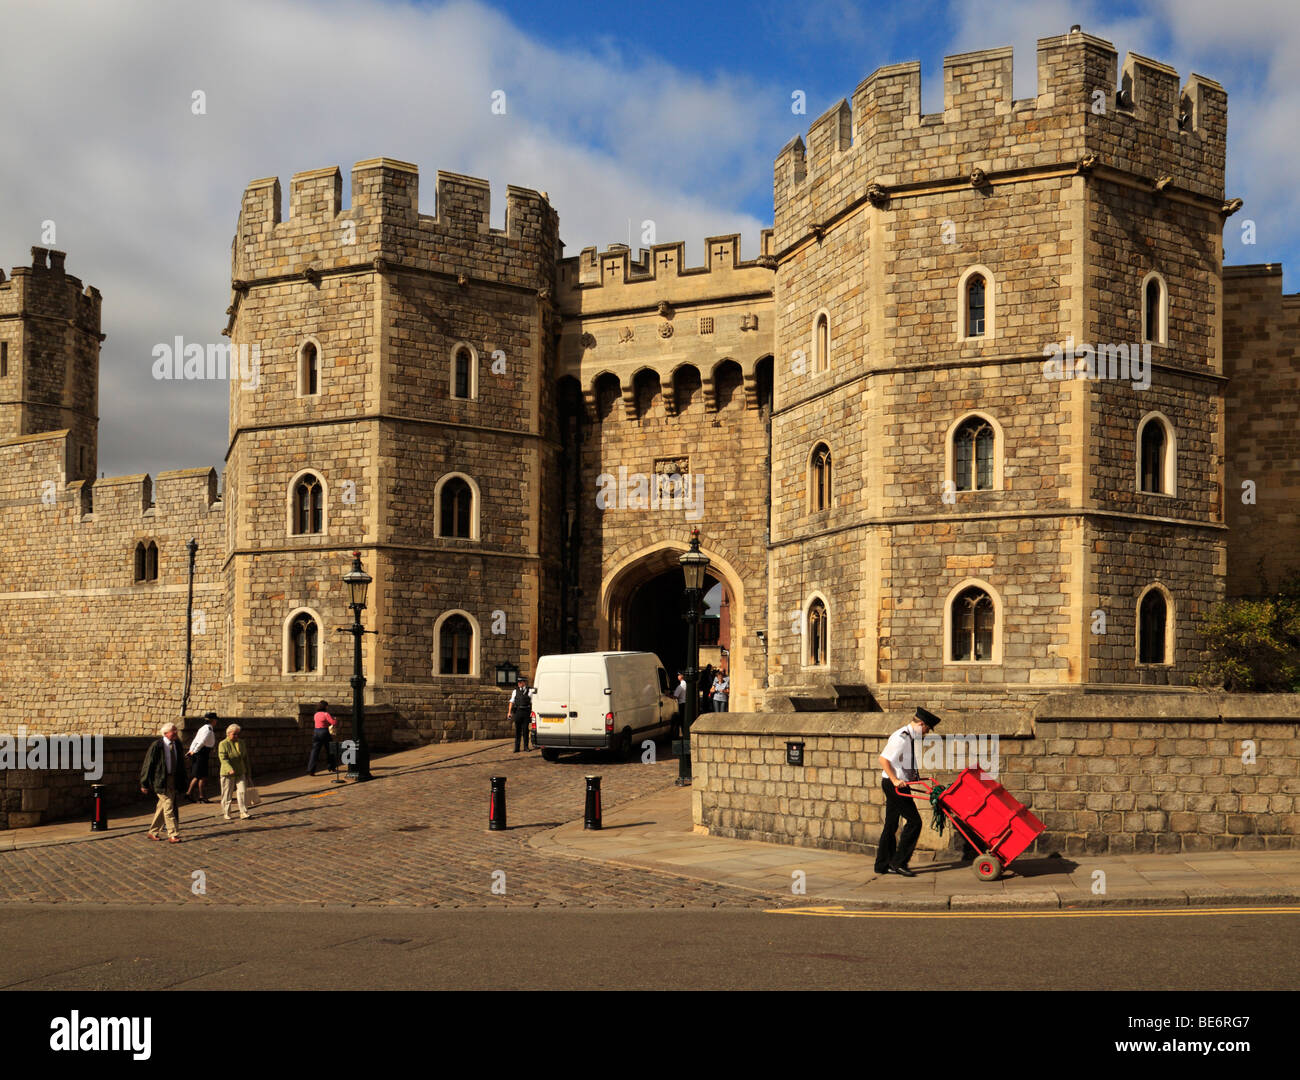 windsor castle entrance